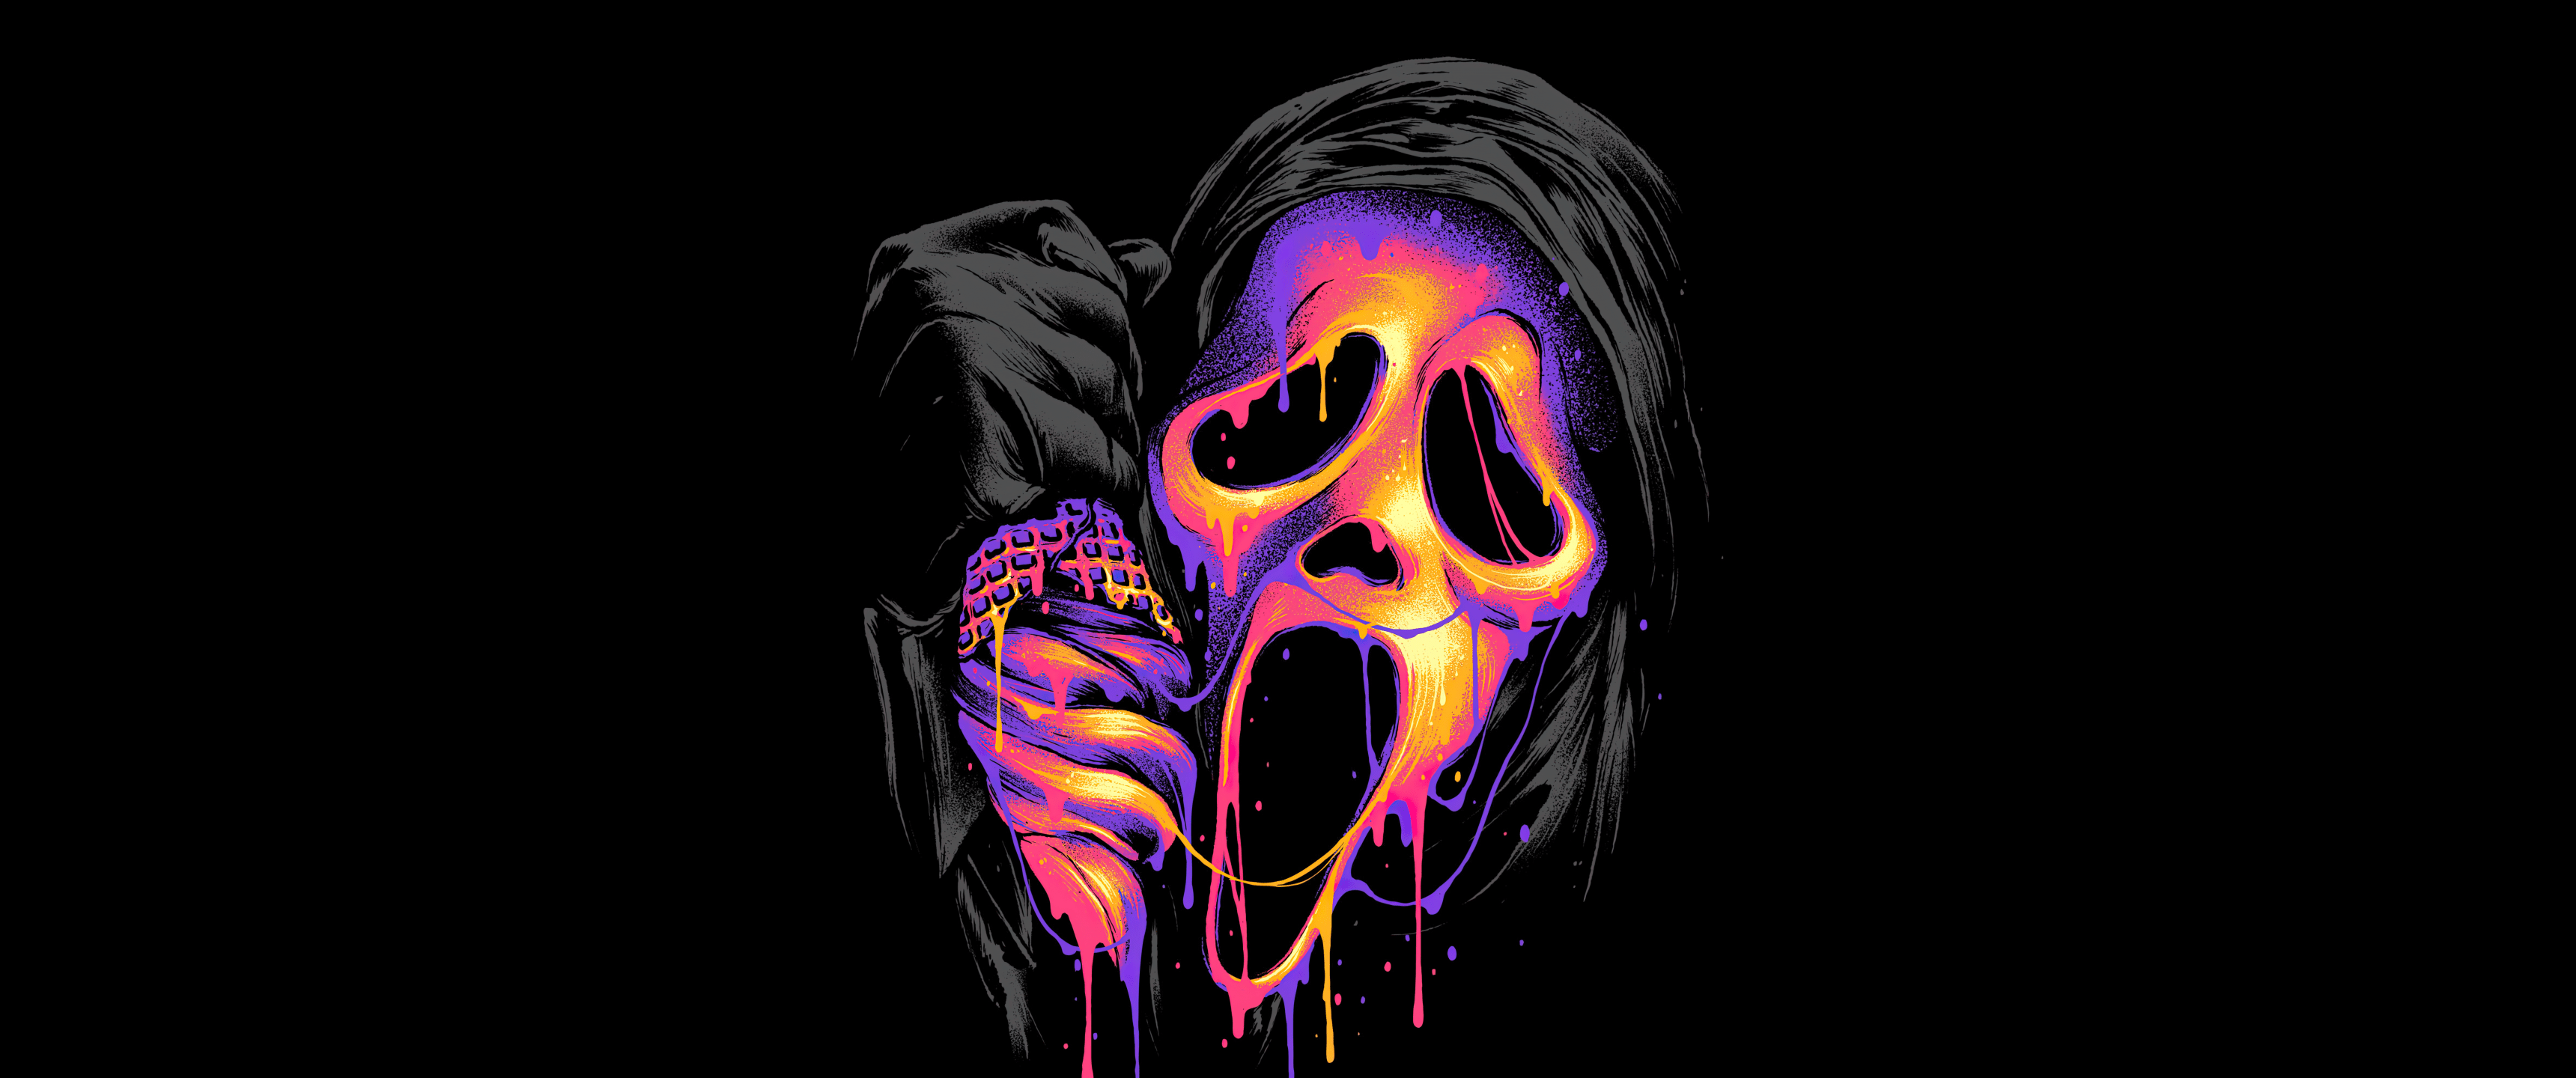 Ghostface Wallpaper 4K, AMOLED, 5K, 8K, Scream, Spooky